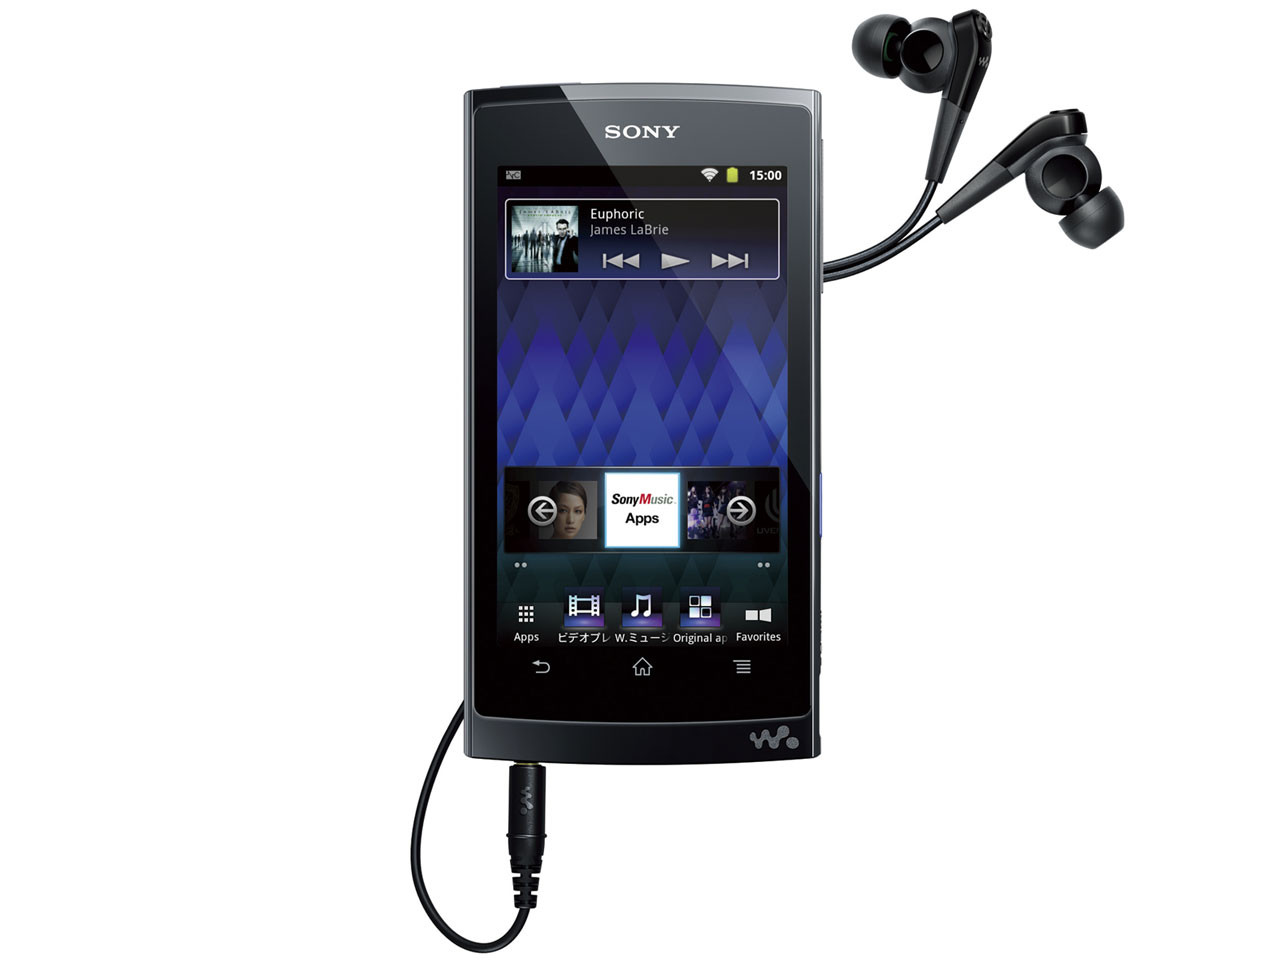 Sony Walkman Z-1000 Series 64GB NW-Z1070 Android 2.3